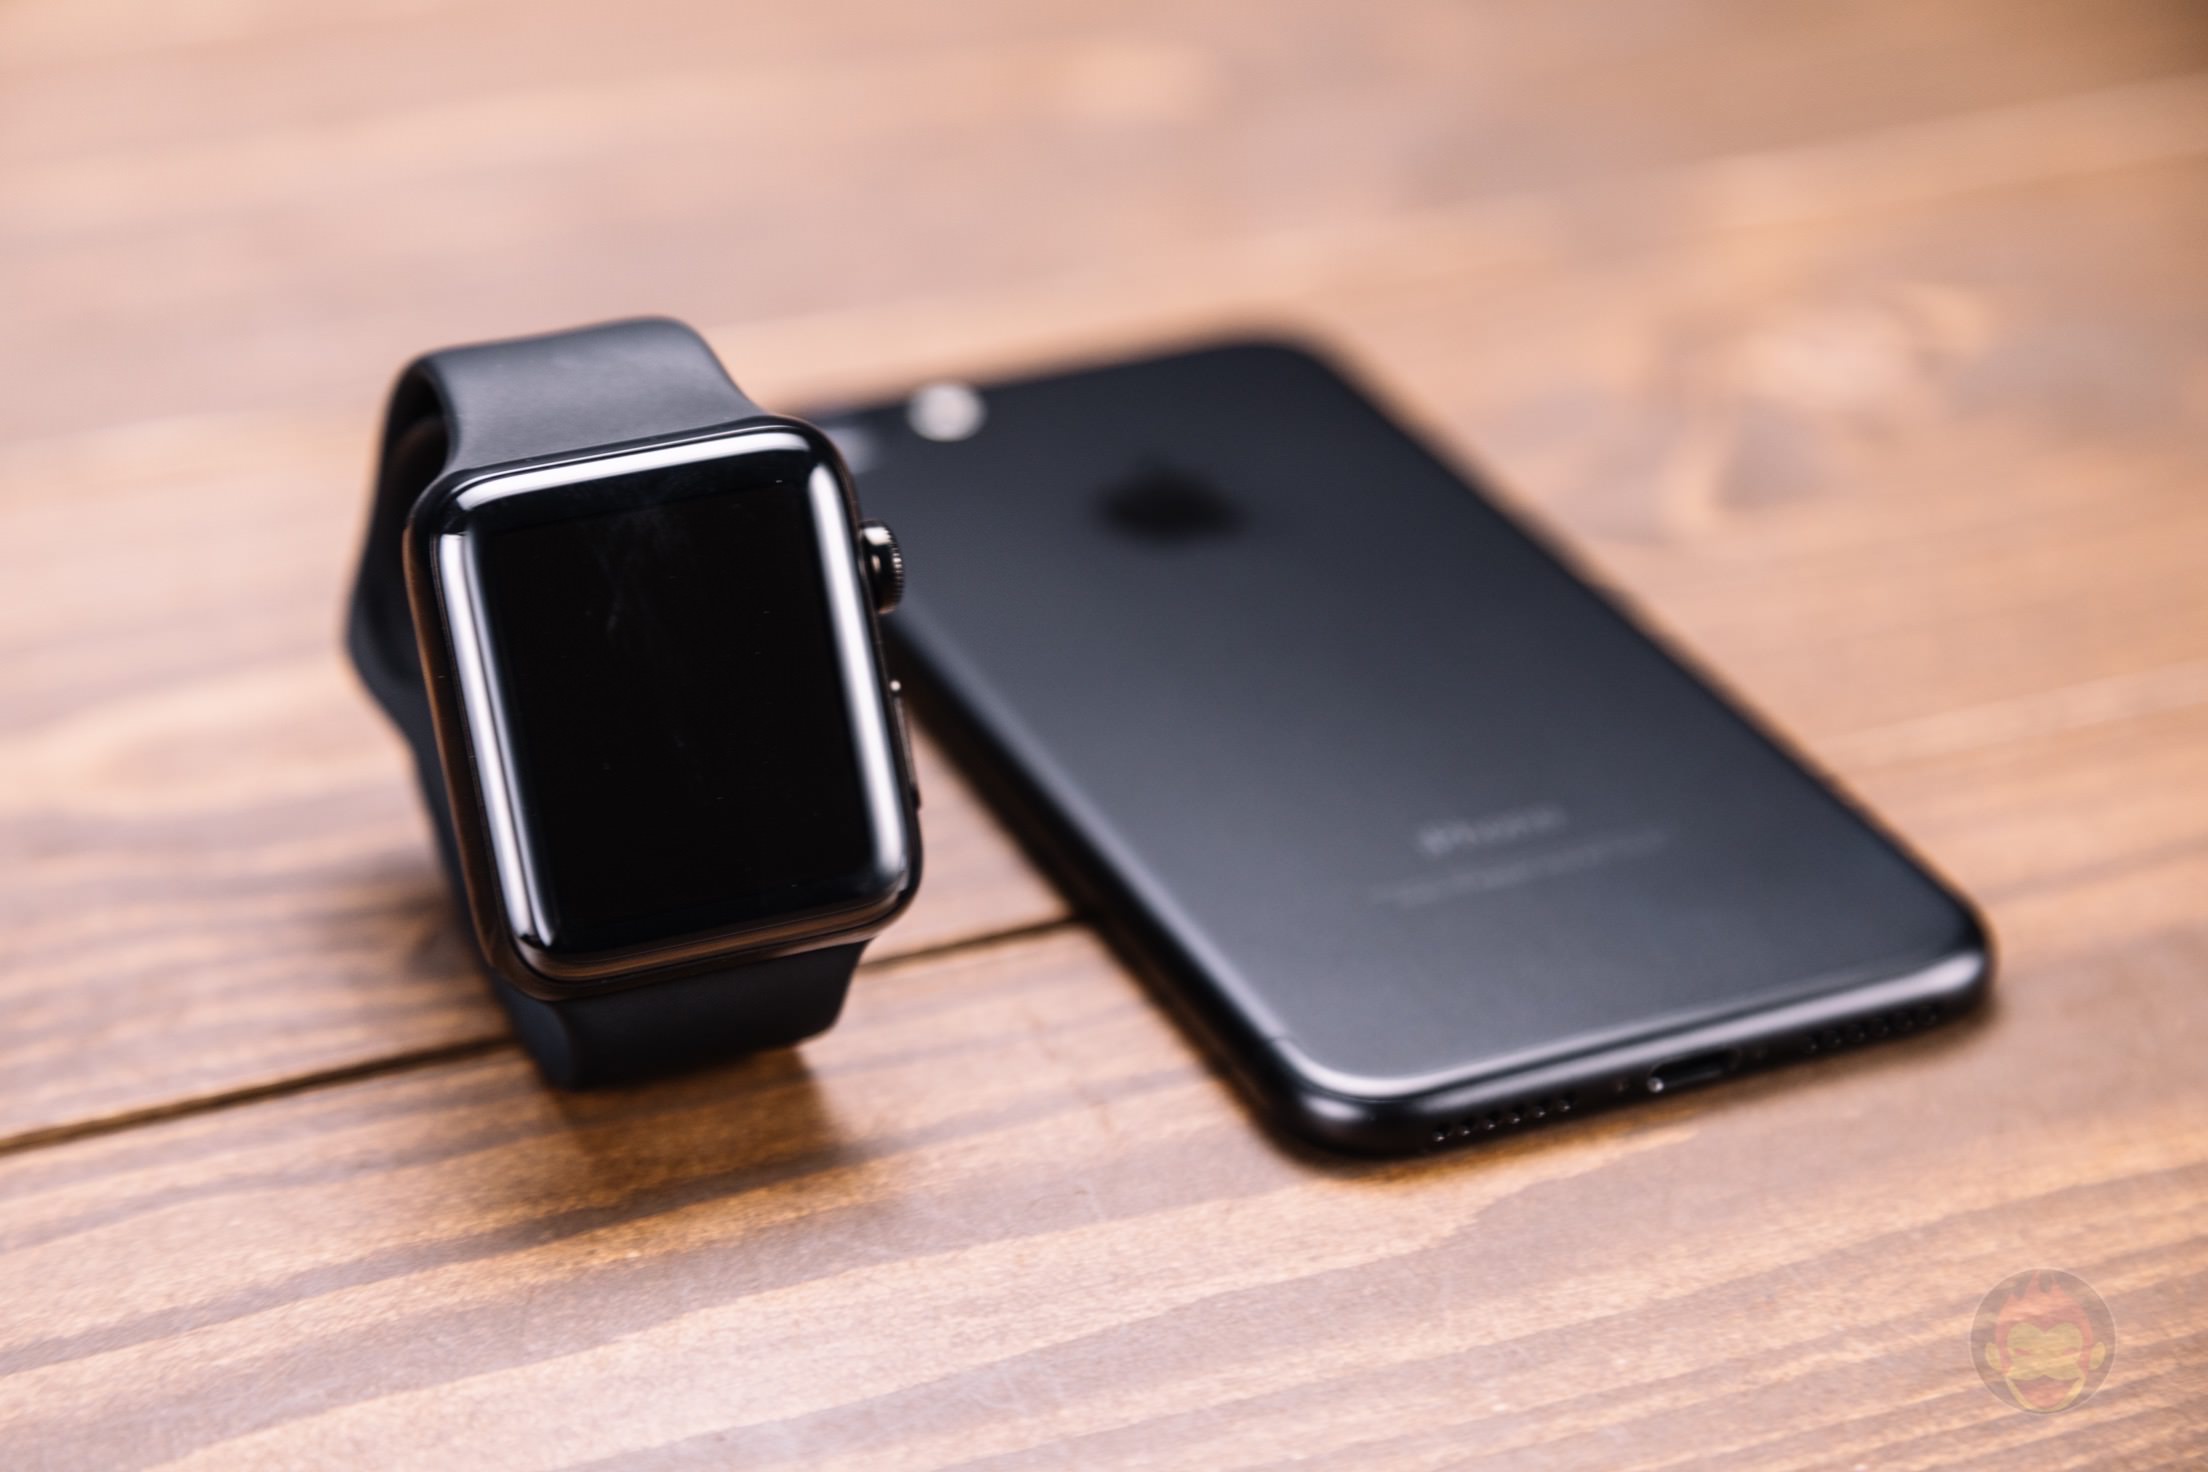 Apple Watch Watch Os 3 2 で シアターモード が利用可能に ゴリミー